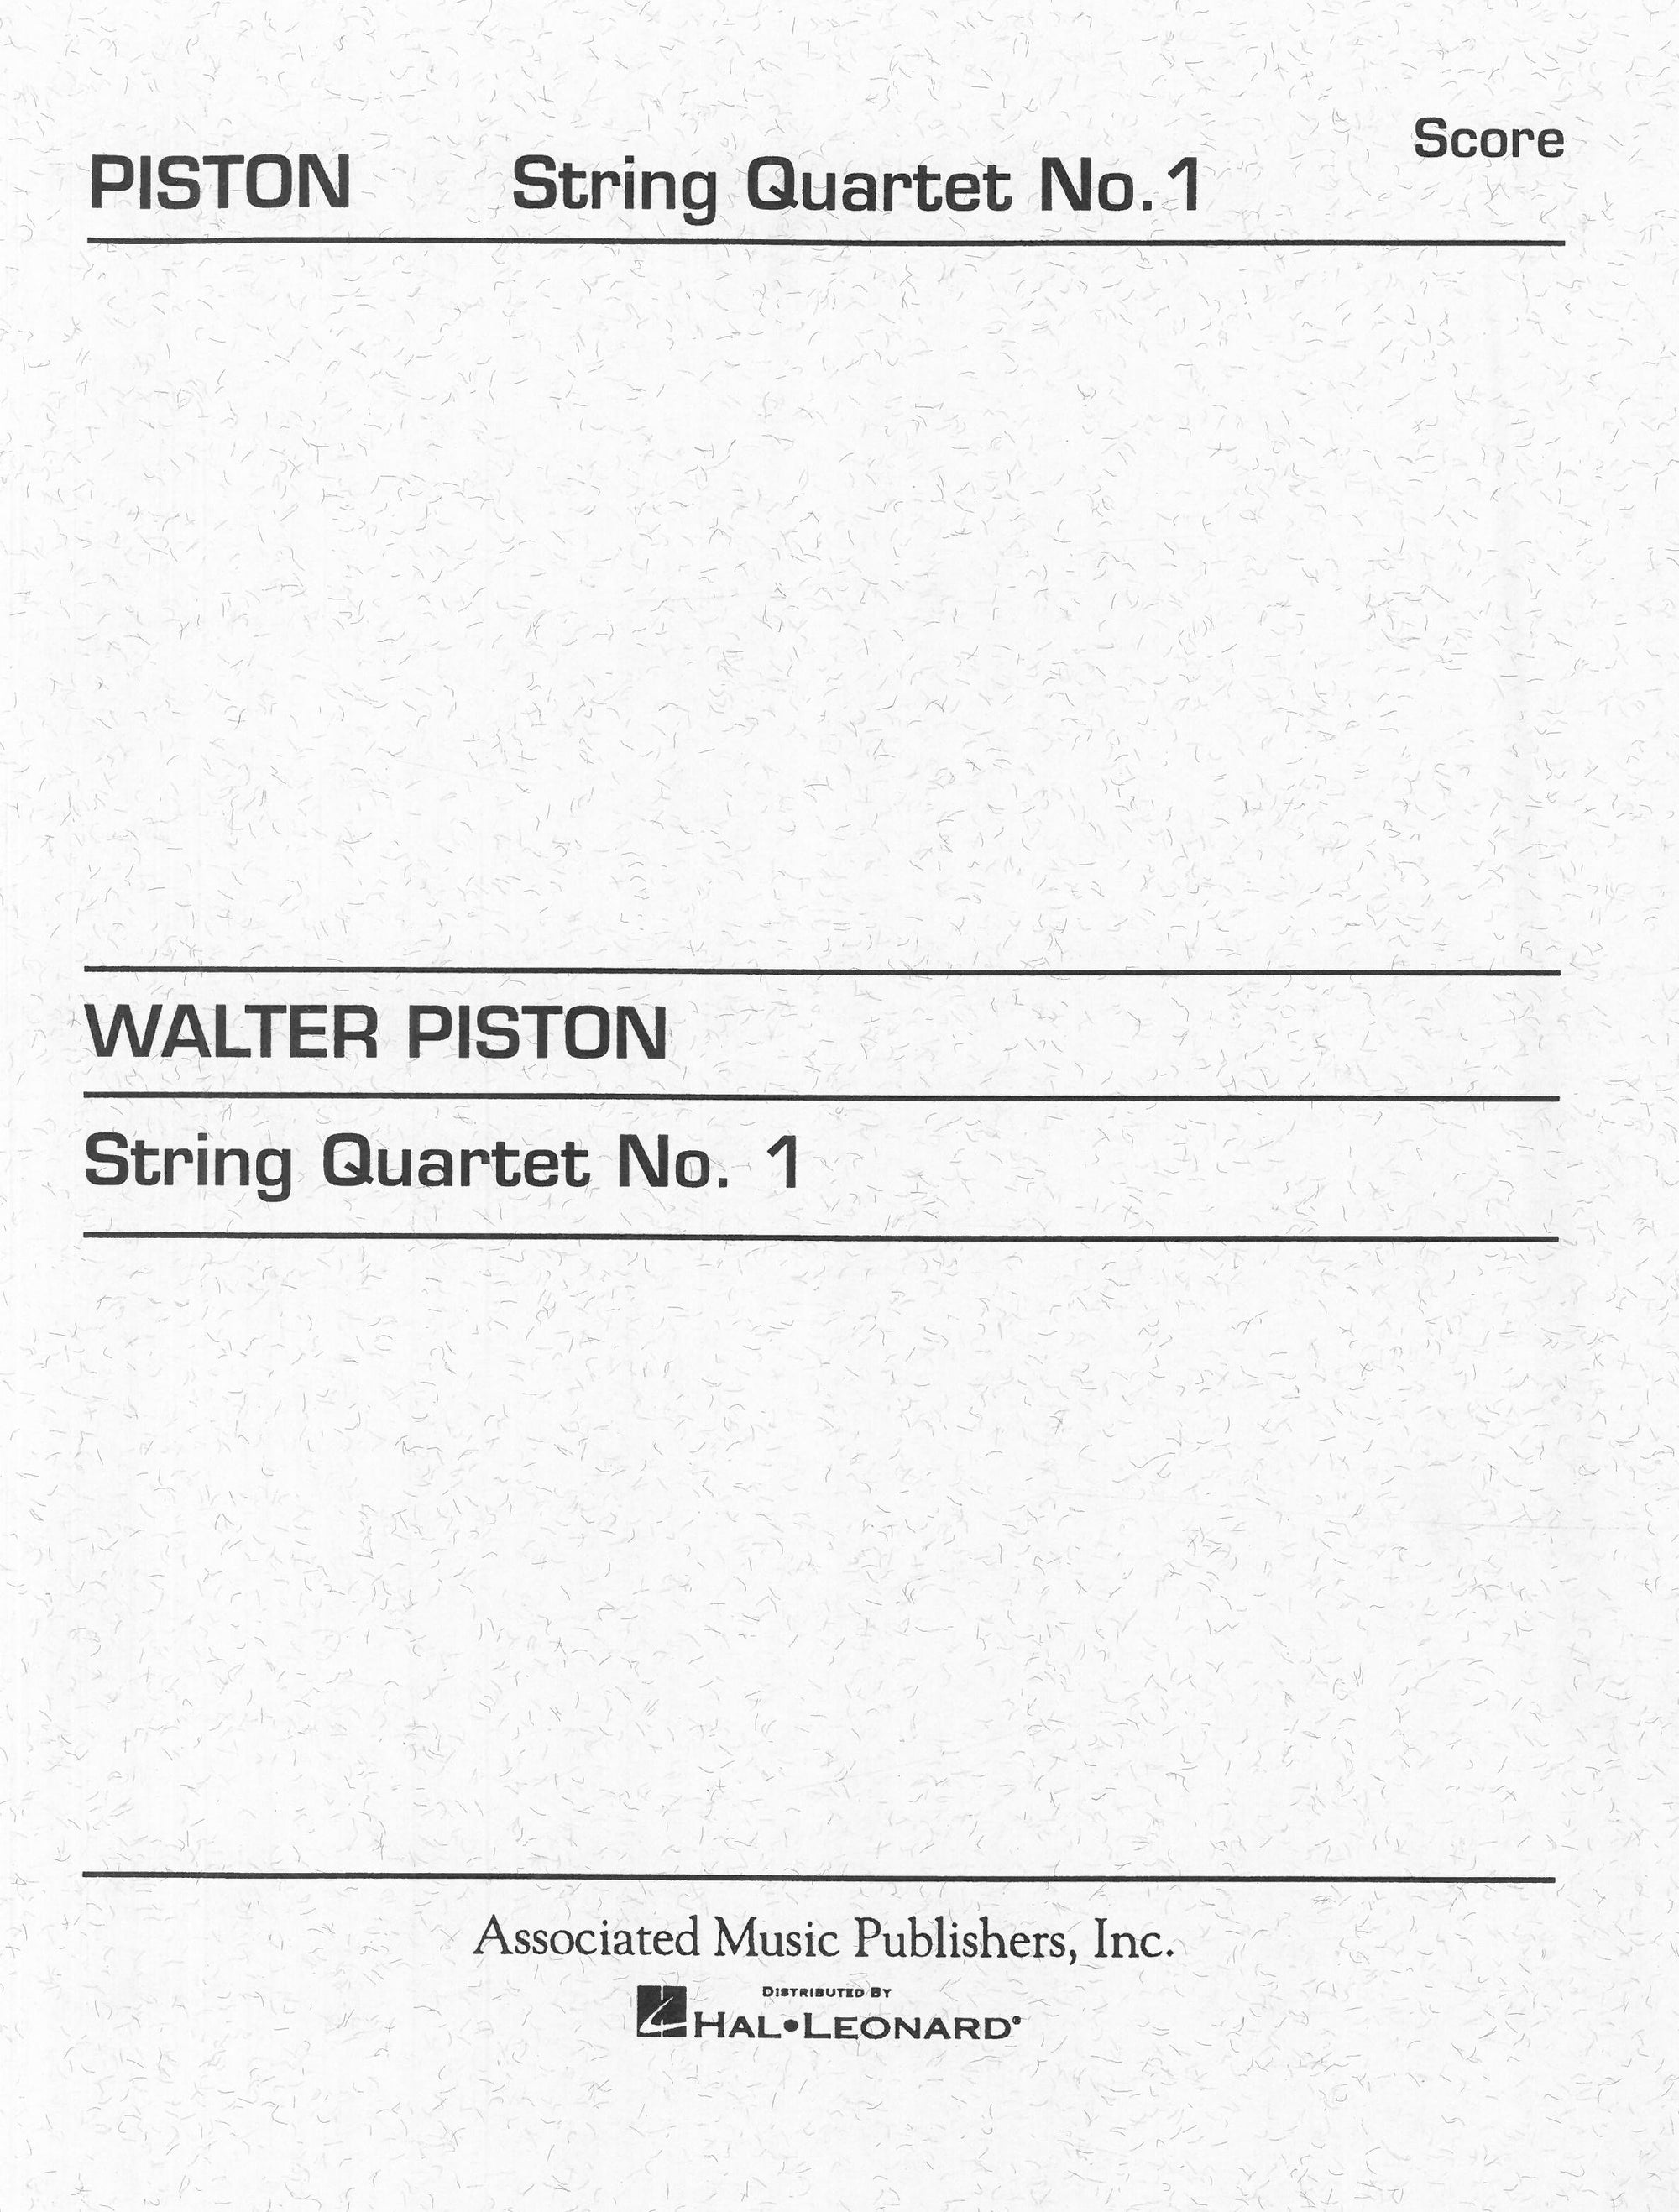 Piston: String Quartet No. 1